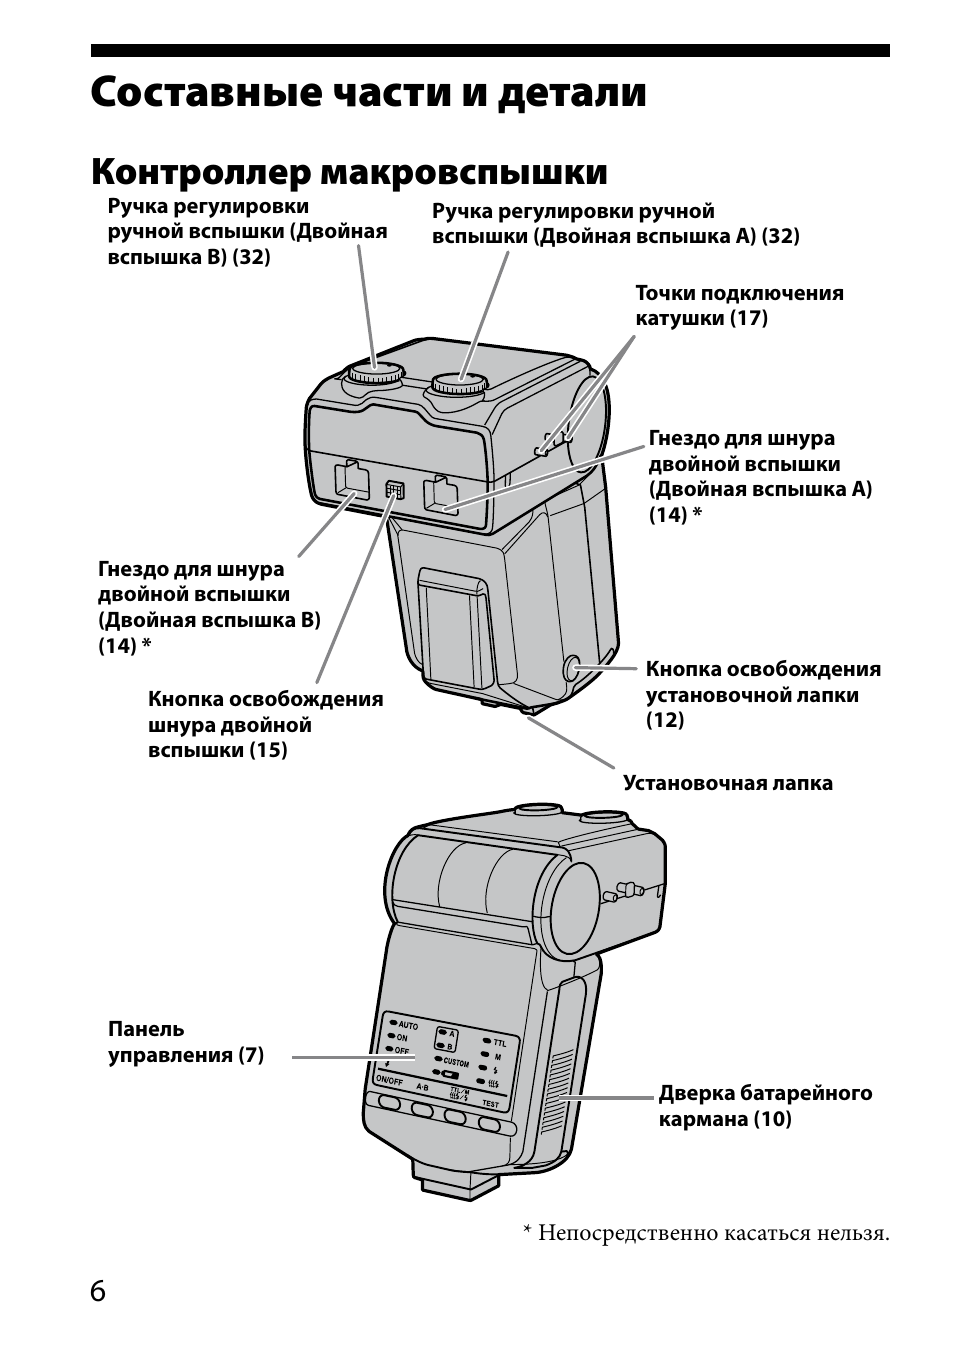 Составные части и детали, Контроллер макровспышки | Sony HVL-MT24AM User Manual | Page 240 / 295